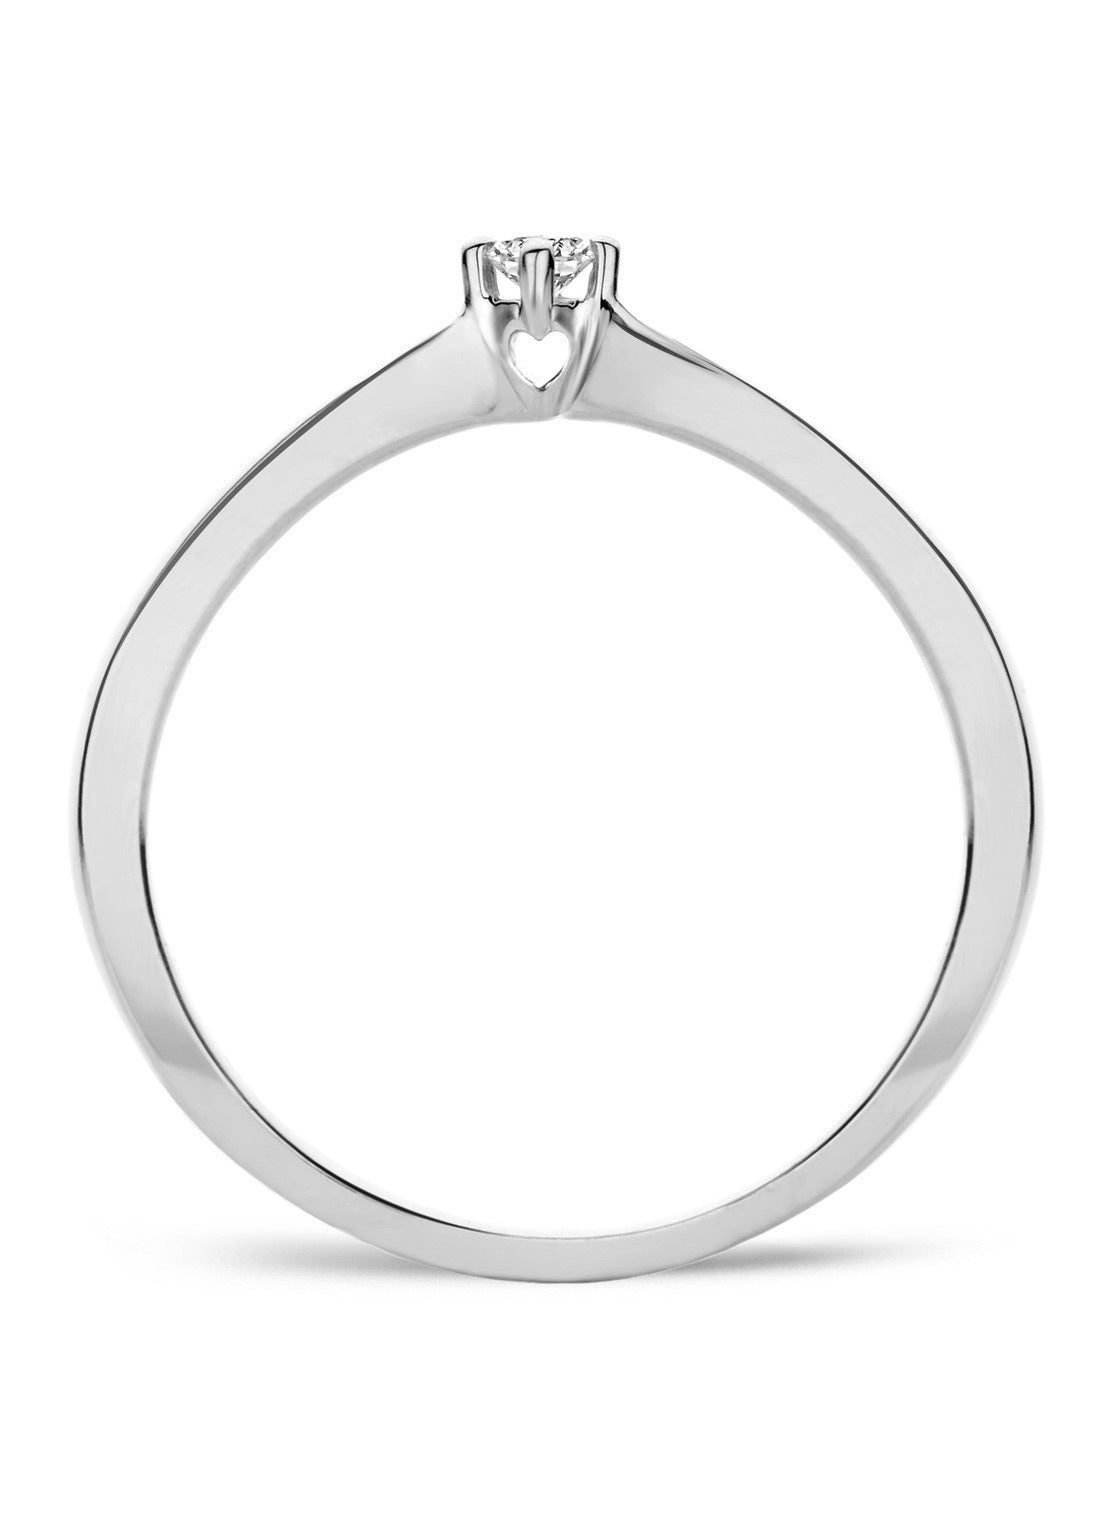 White gold ring, 0.05 ct diamond, Starlight